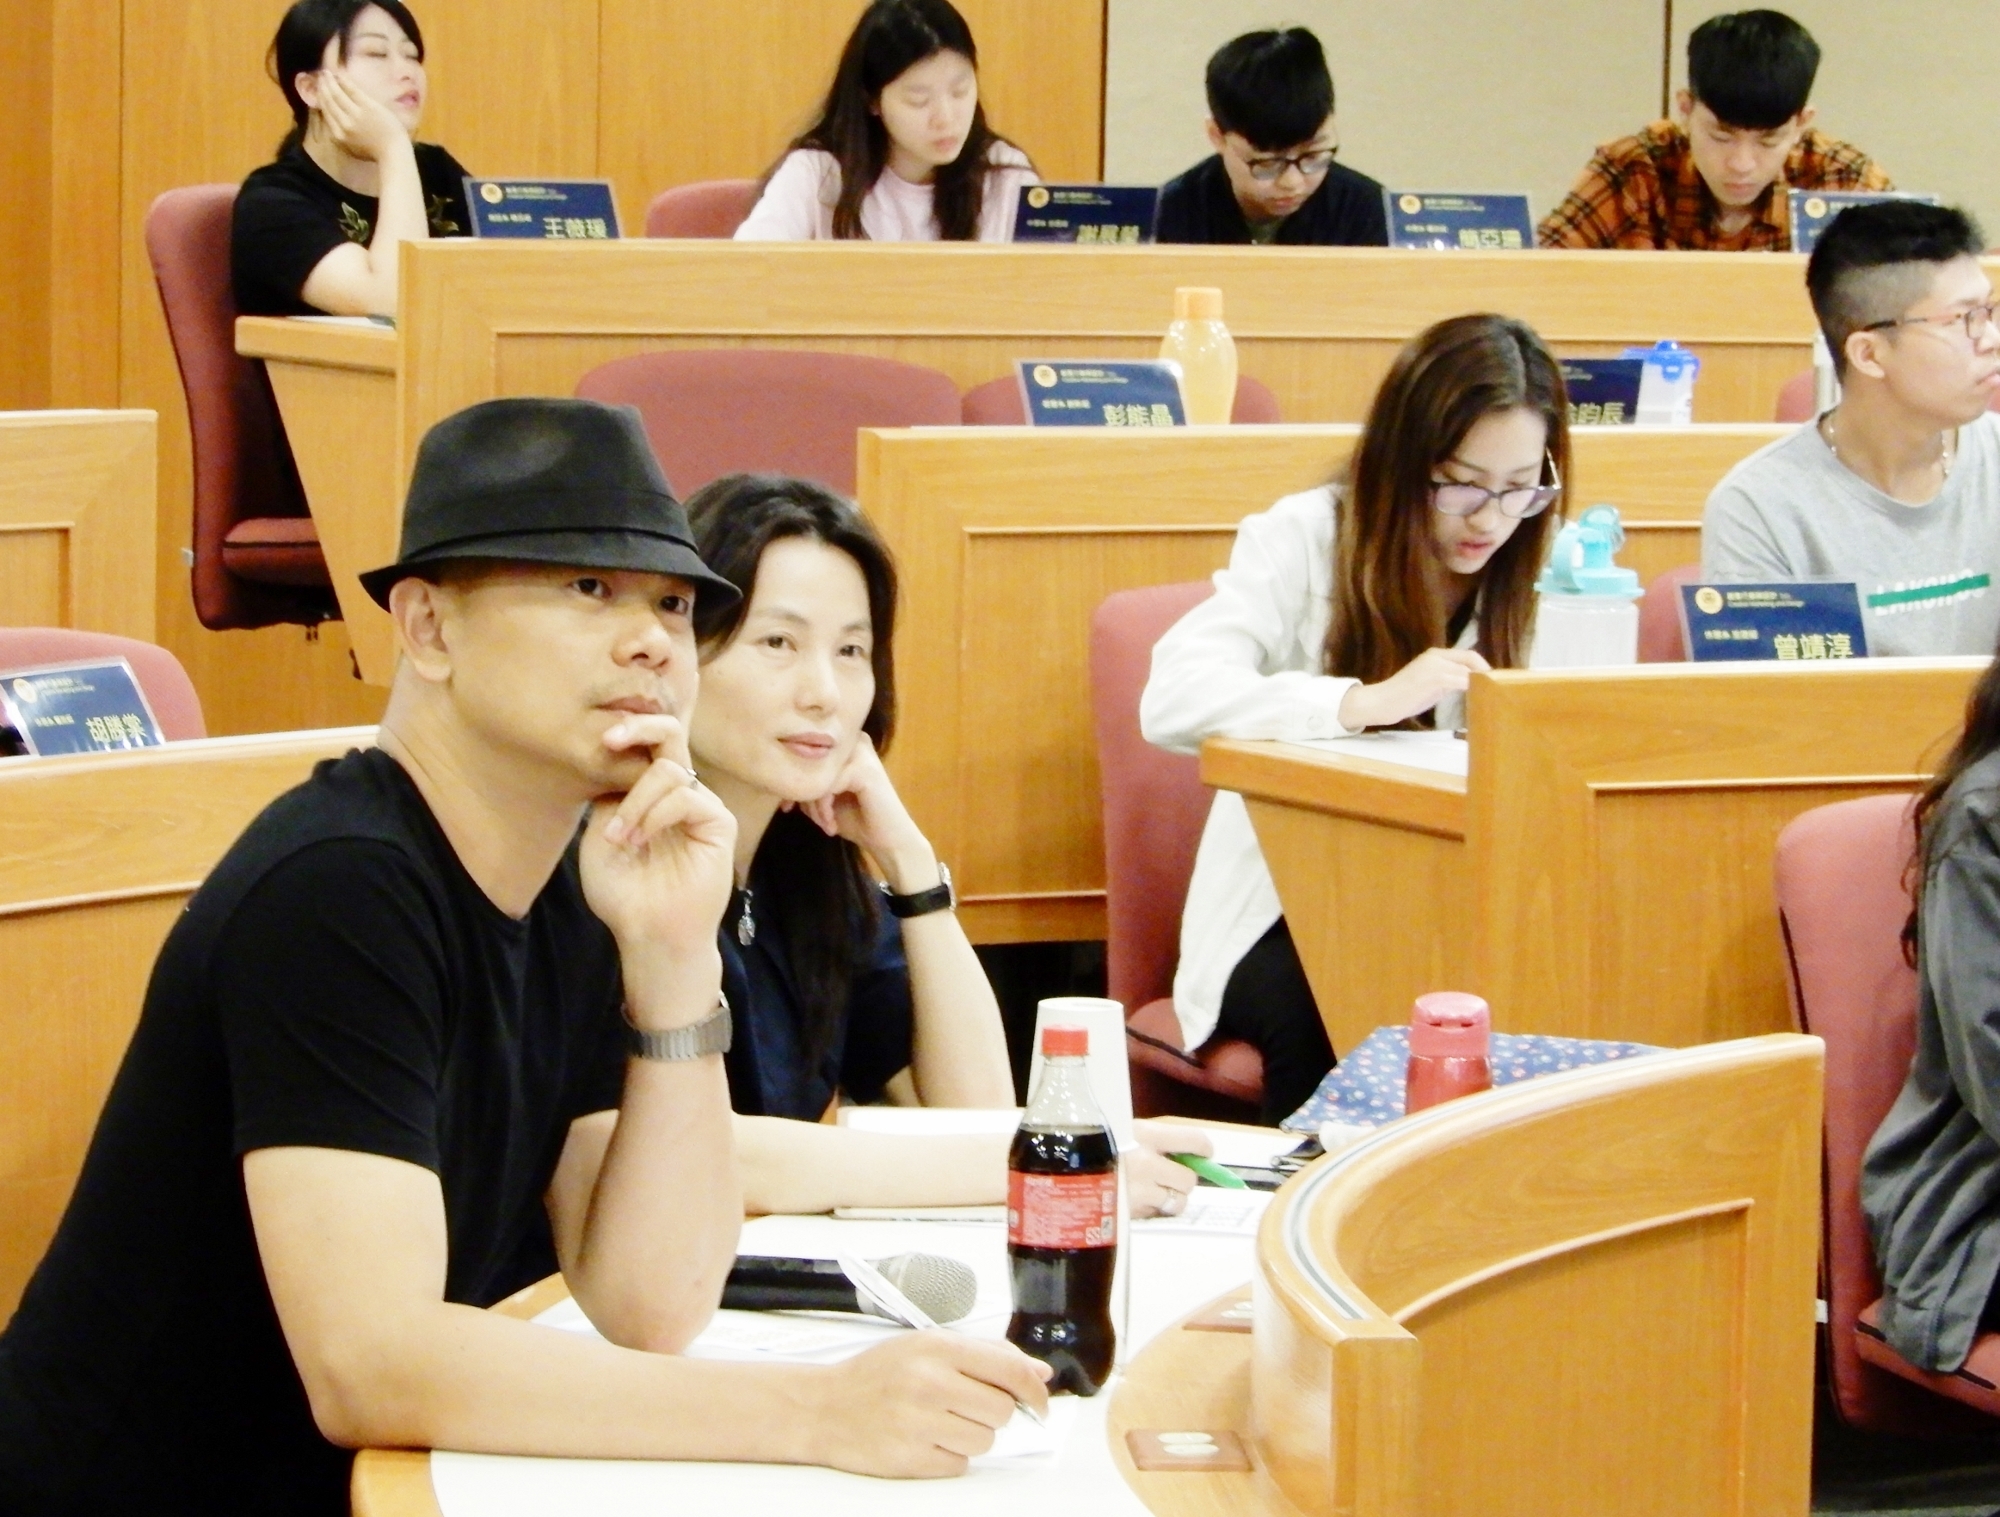 江振誠講座教授(左)專注聆聽學生報告。